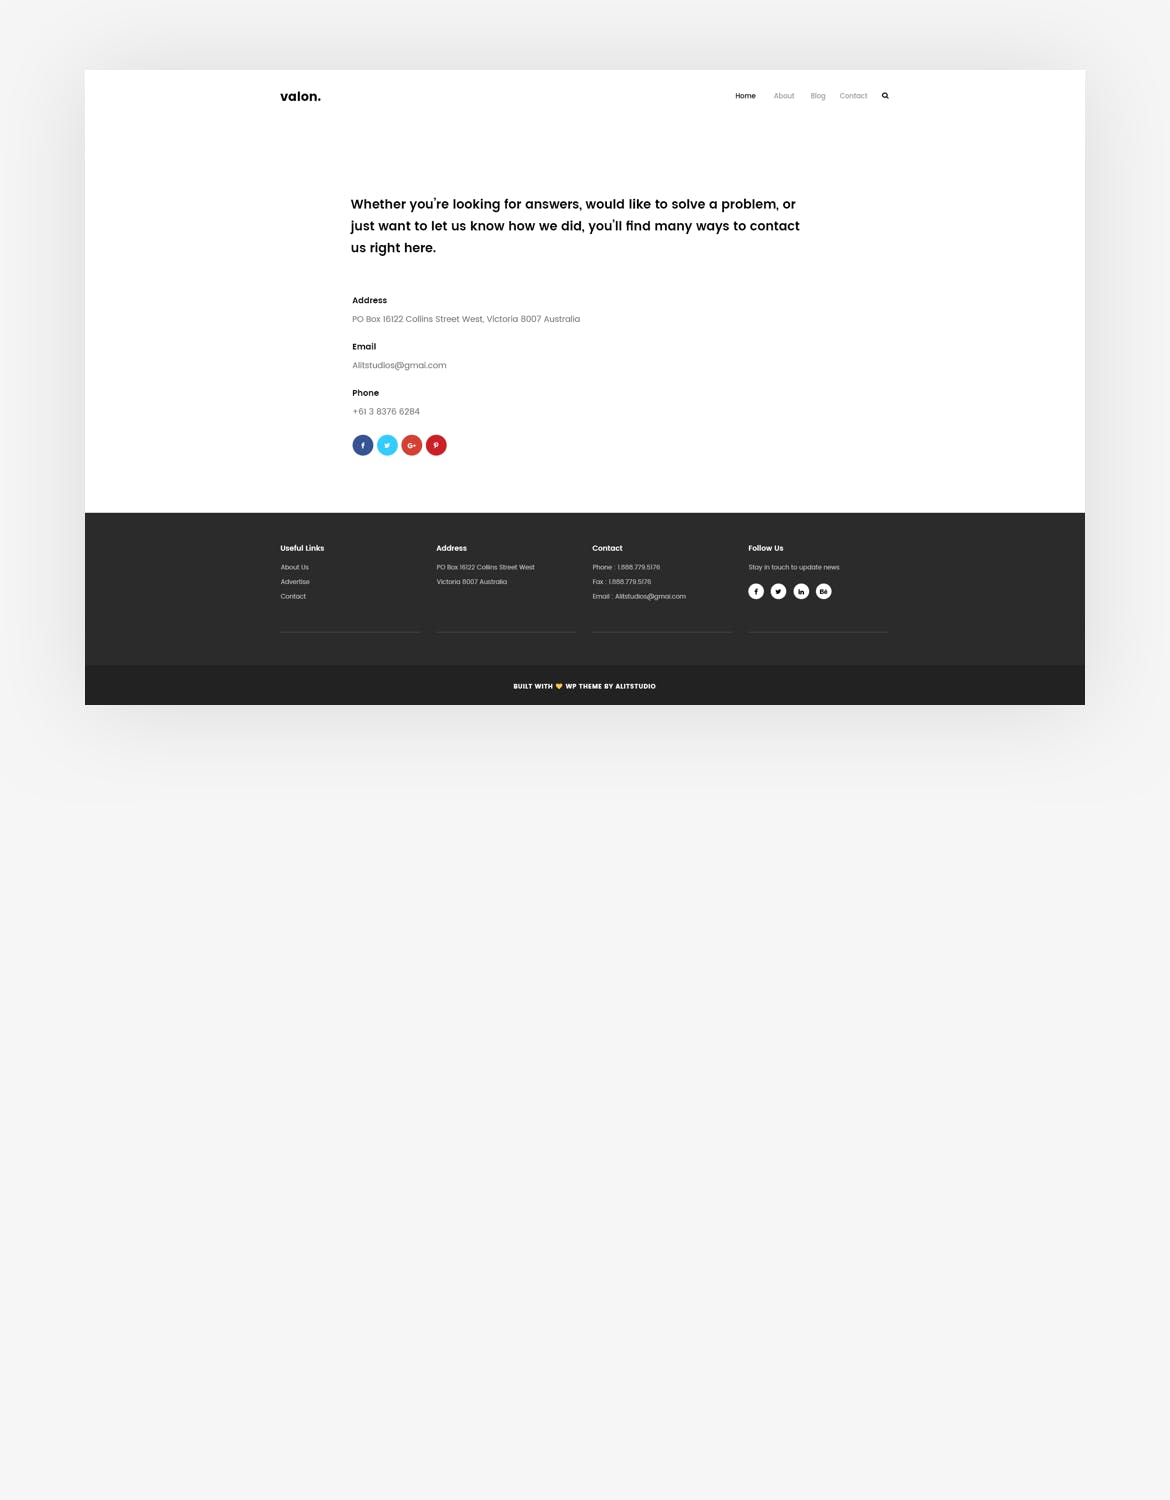 创意产品设计展示网站设计PSD模板下载 Agency portfolio Psd Template插图(4)